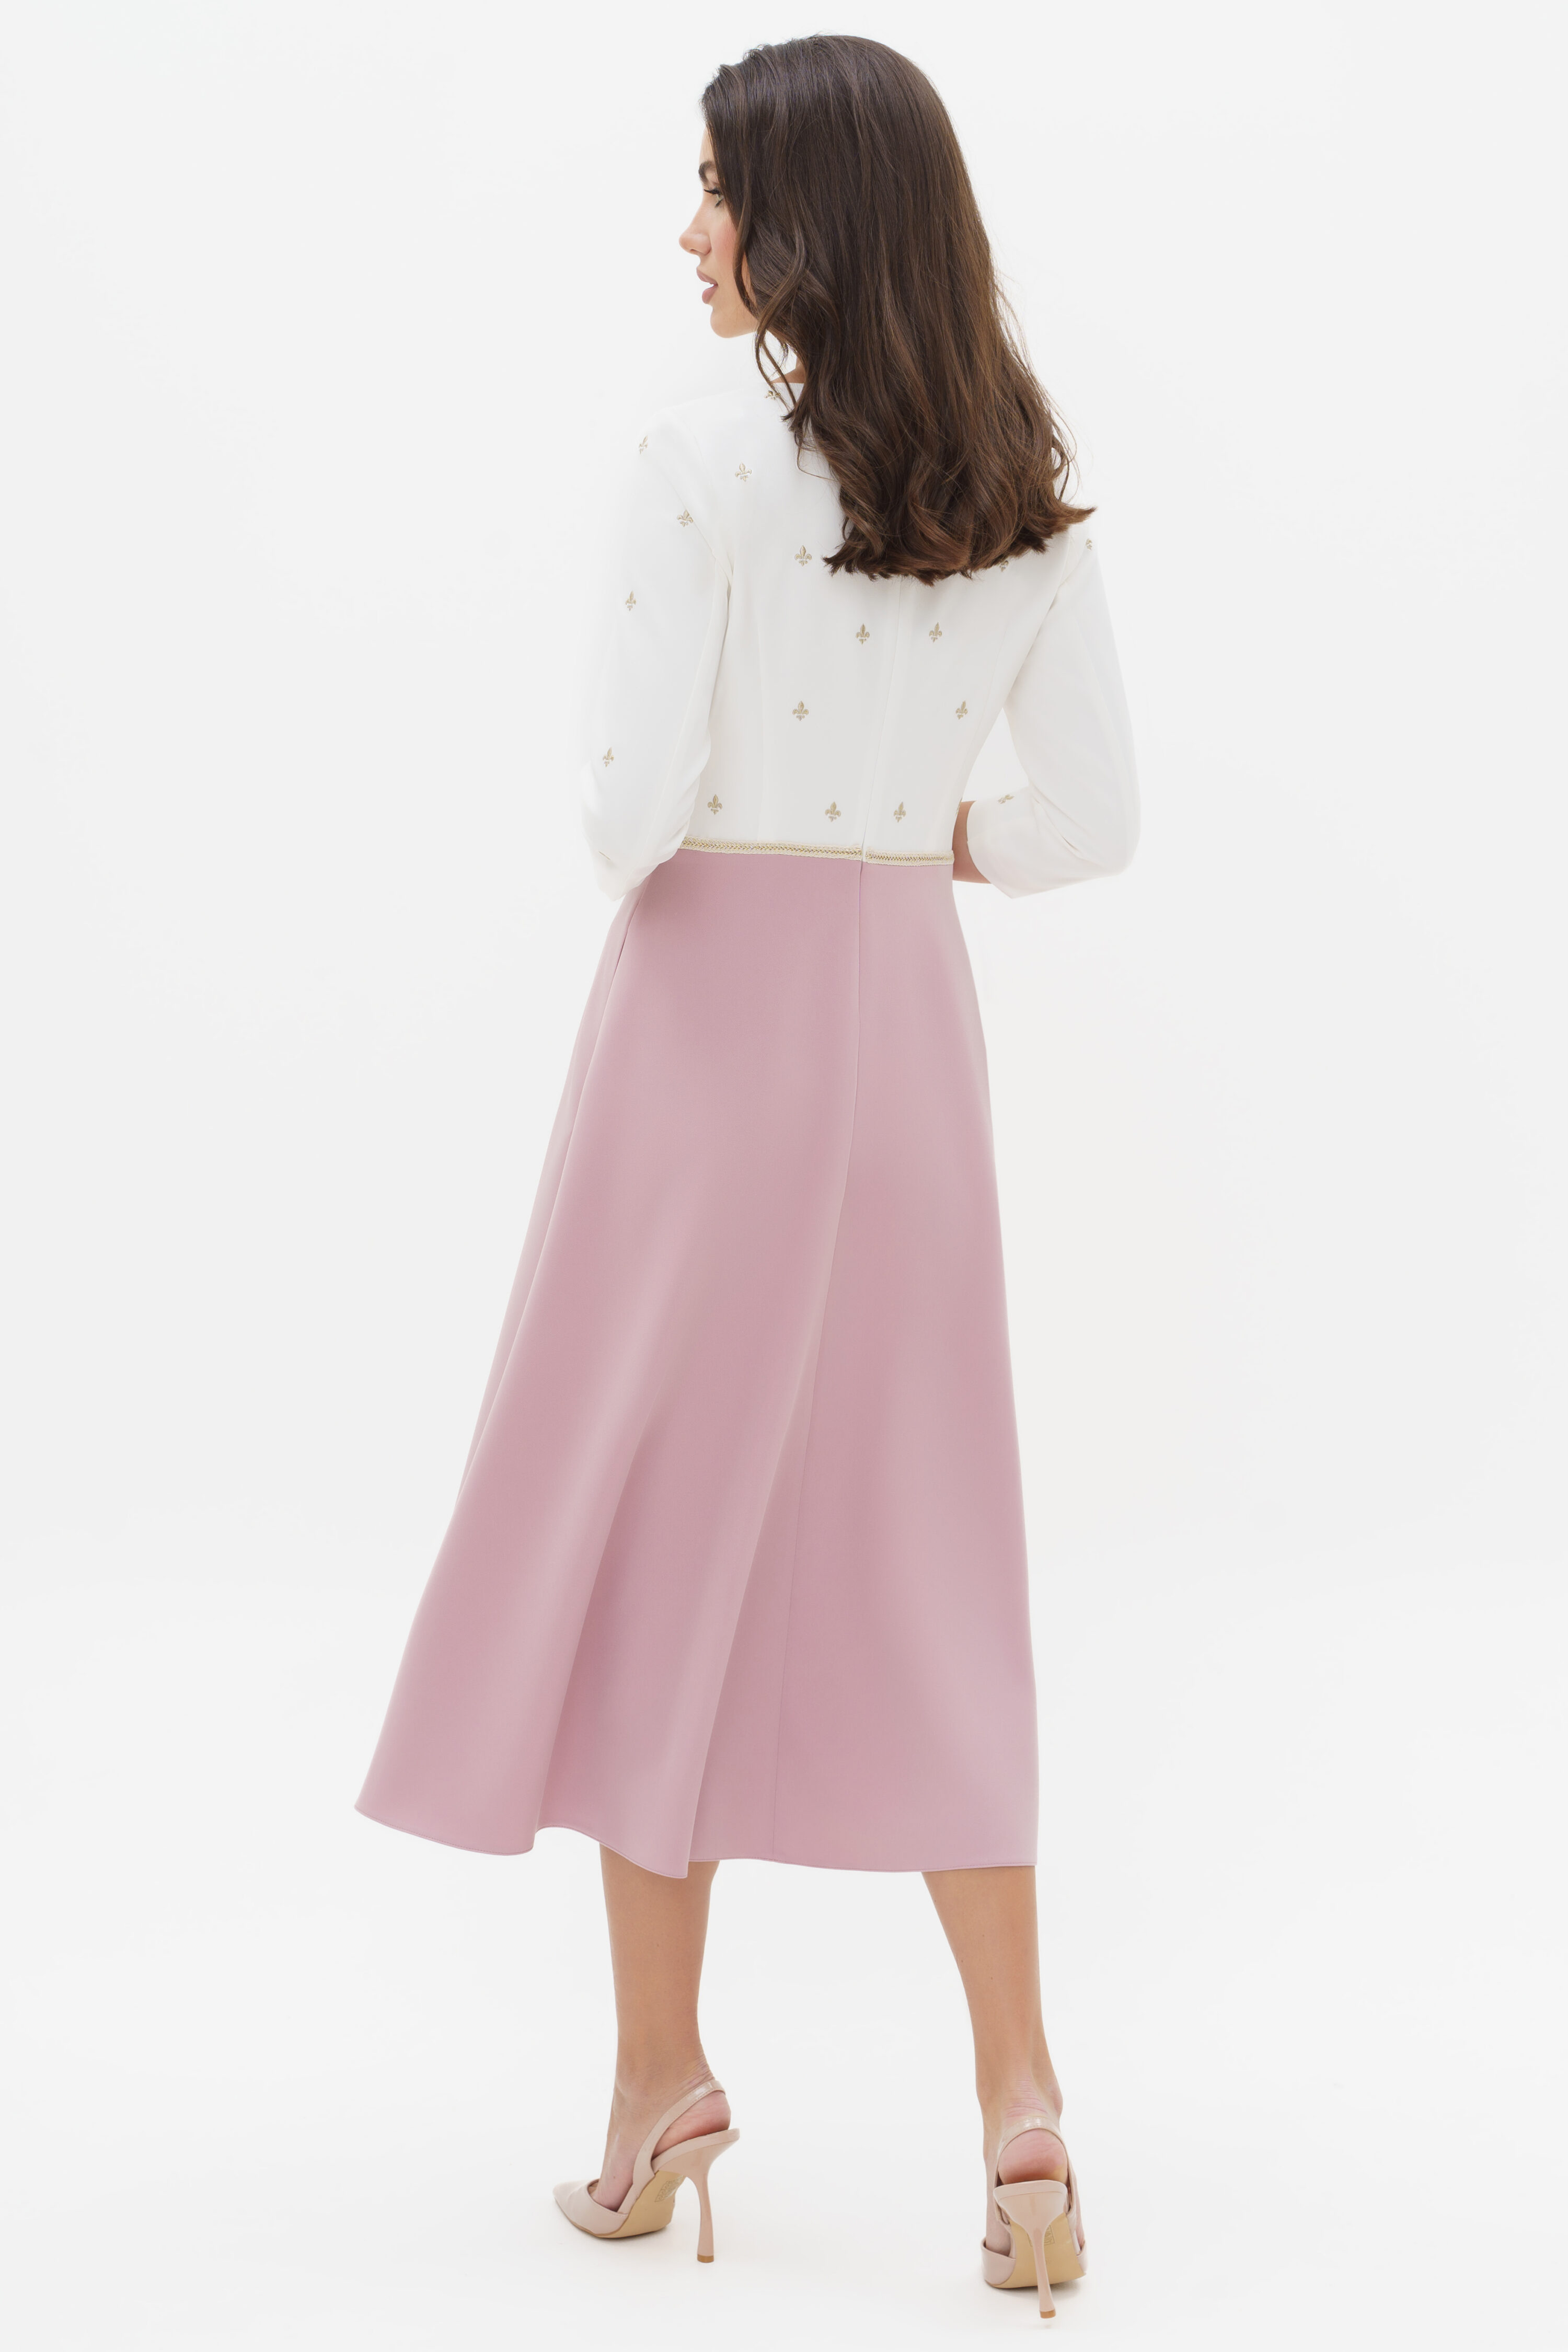 Купить платье URS 24-305-2 розовое с вышивкой нарядное